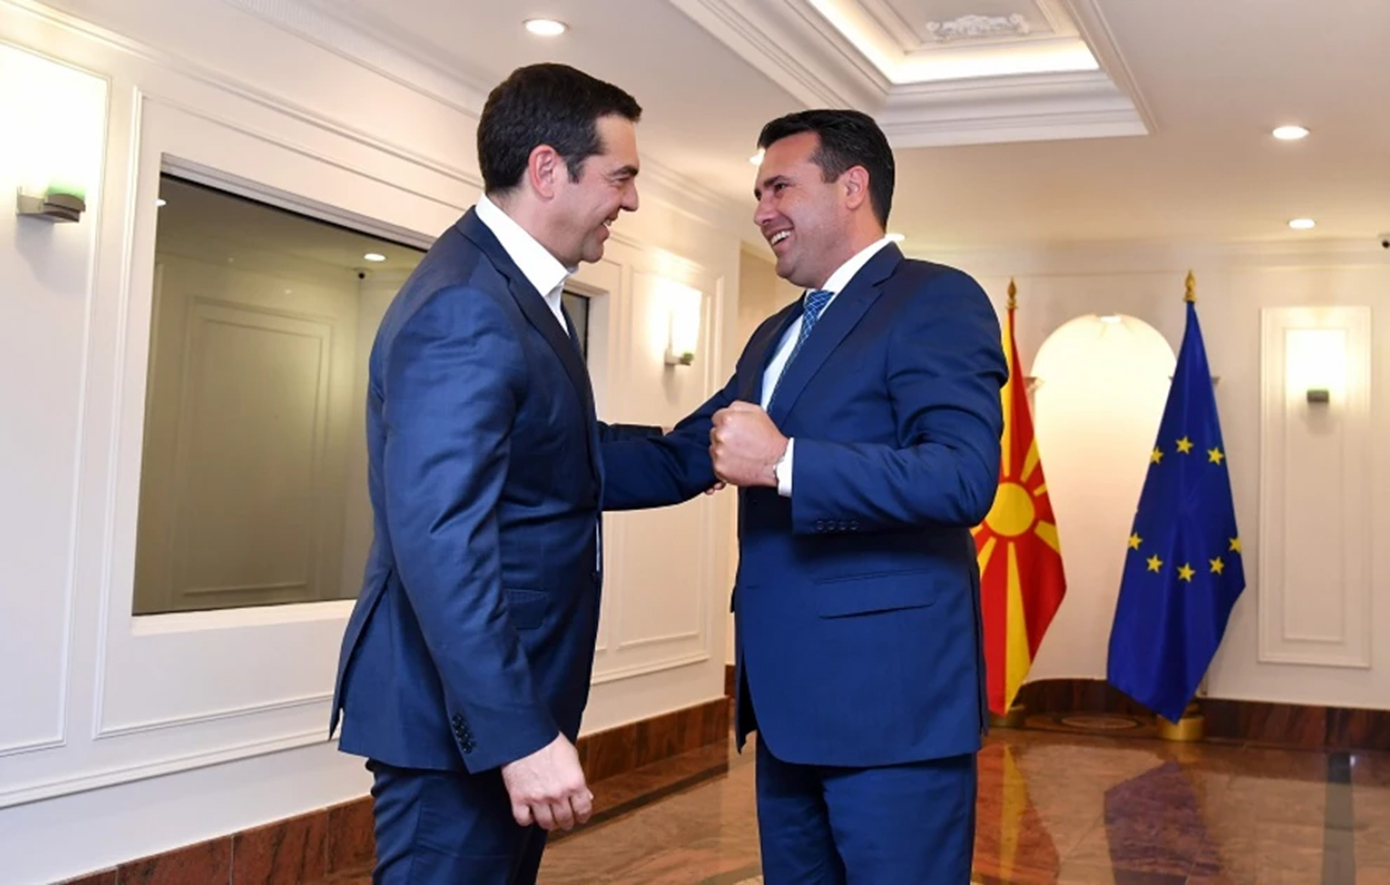 Επικοινωνία Τσίπρα &#8211; Ζάεφ για τη Βόρεια Μακεδονία και τη Συμφωνία των Πρεσπών